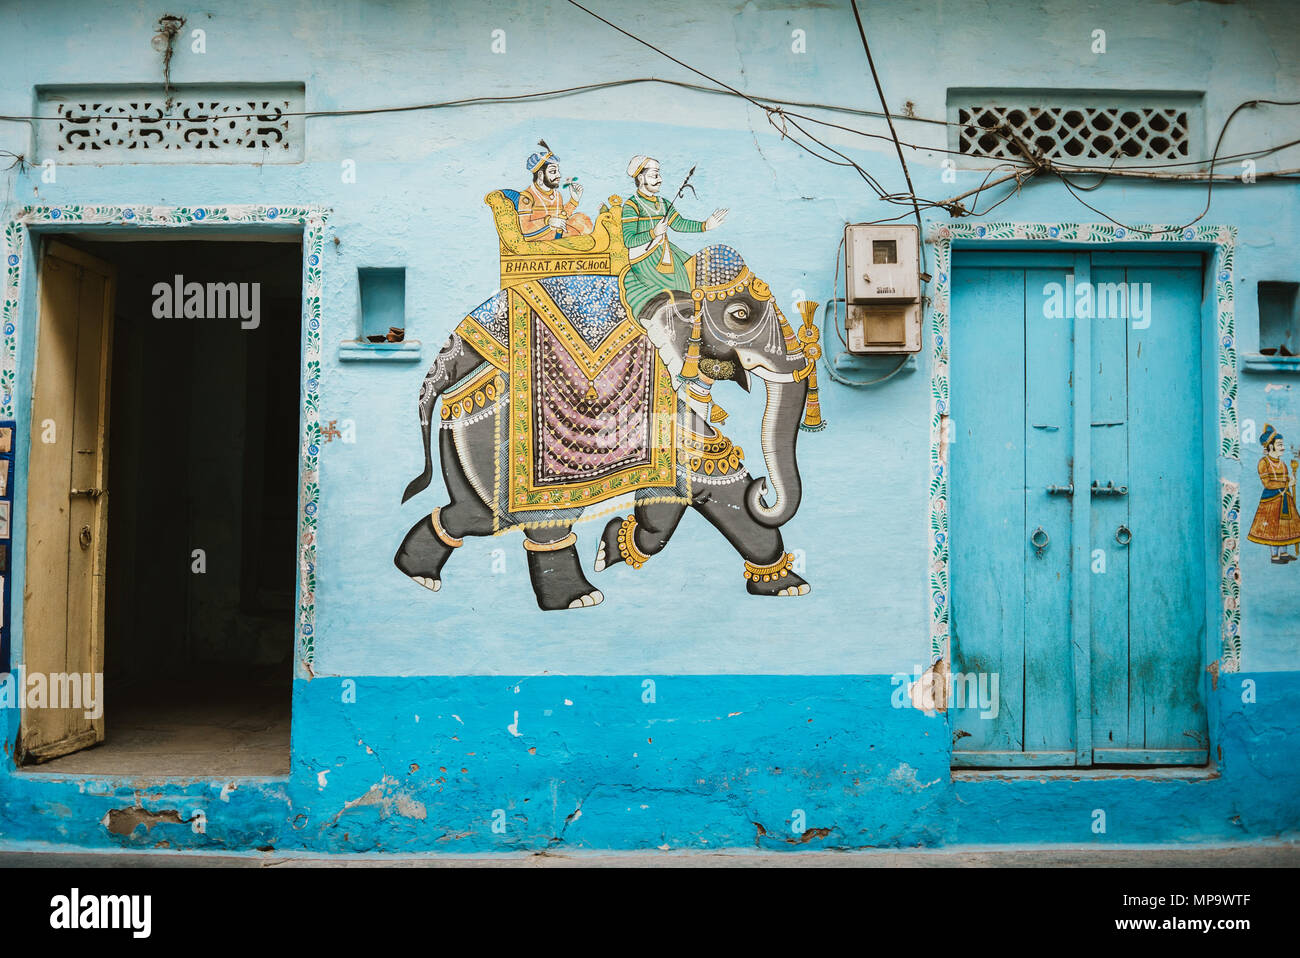 Una pittura colorata di un elefante su un teal blu nella parete tra portali in Udaipur, India Foto Stock